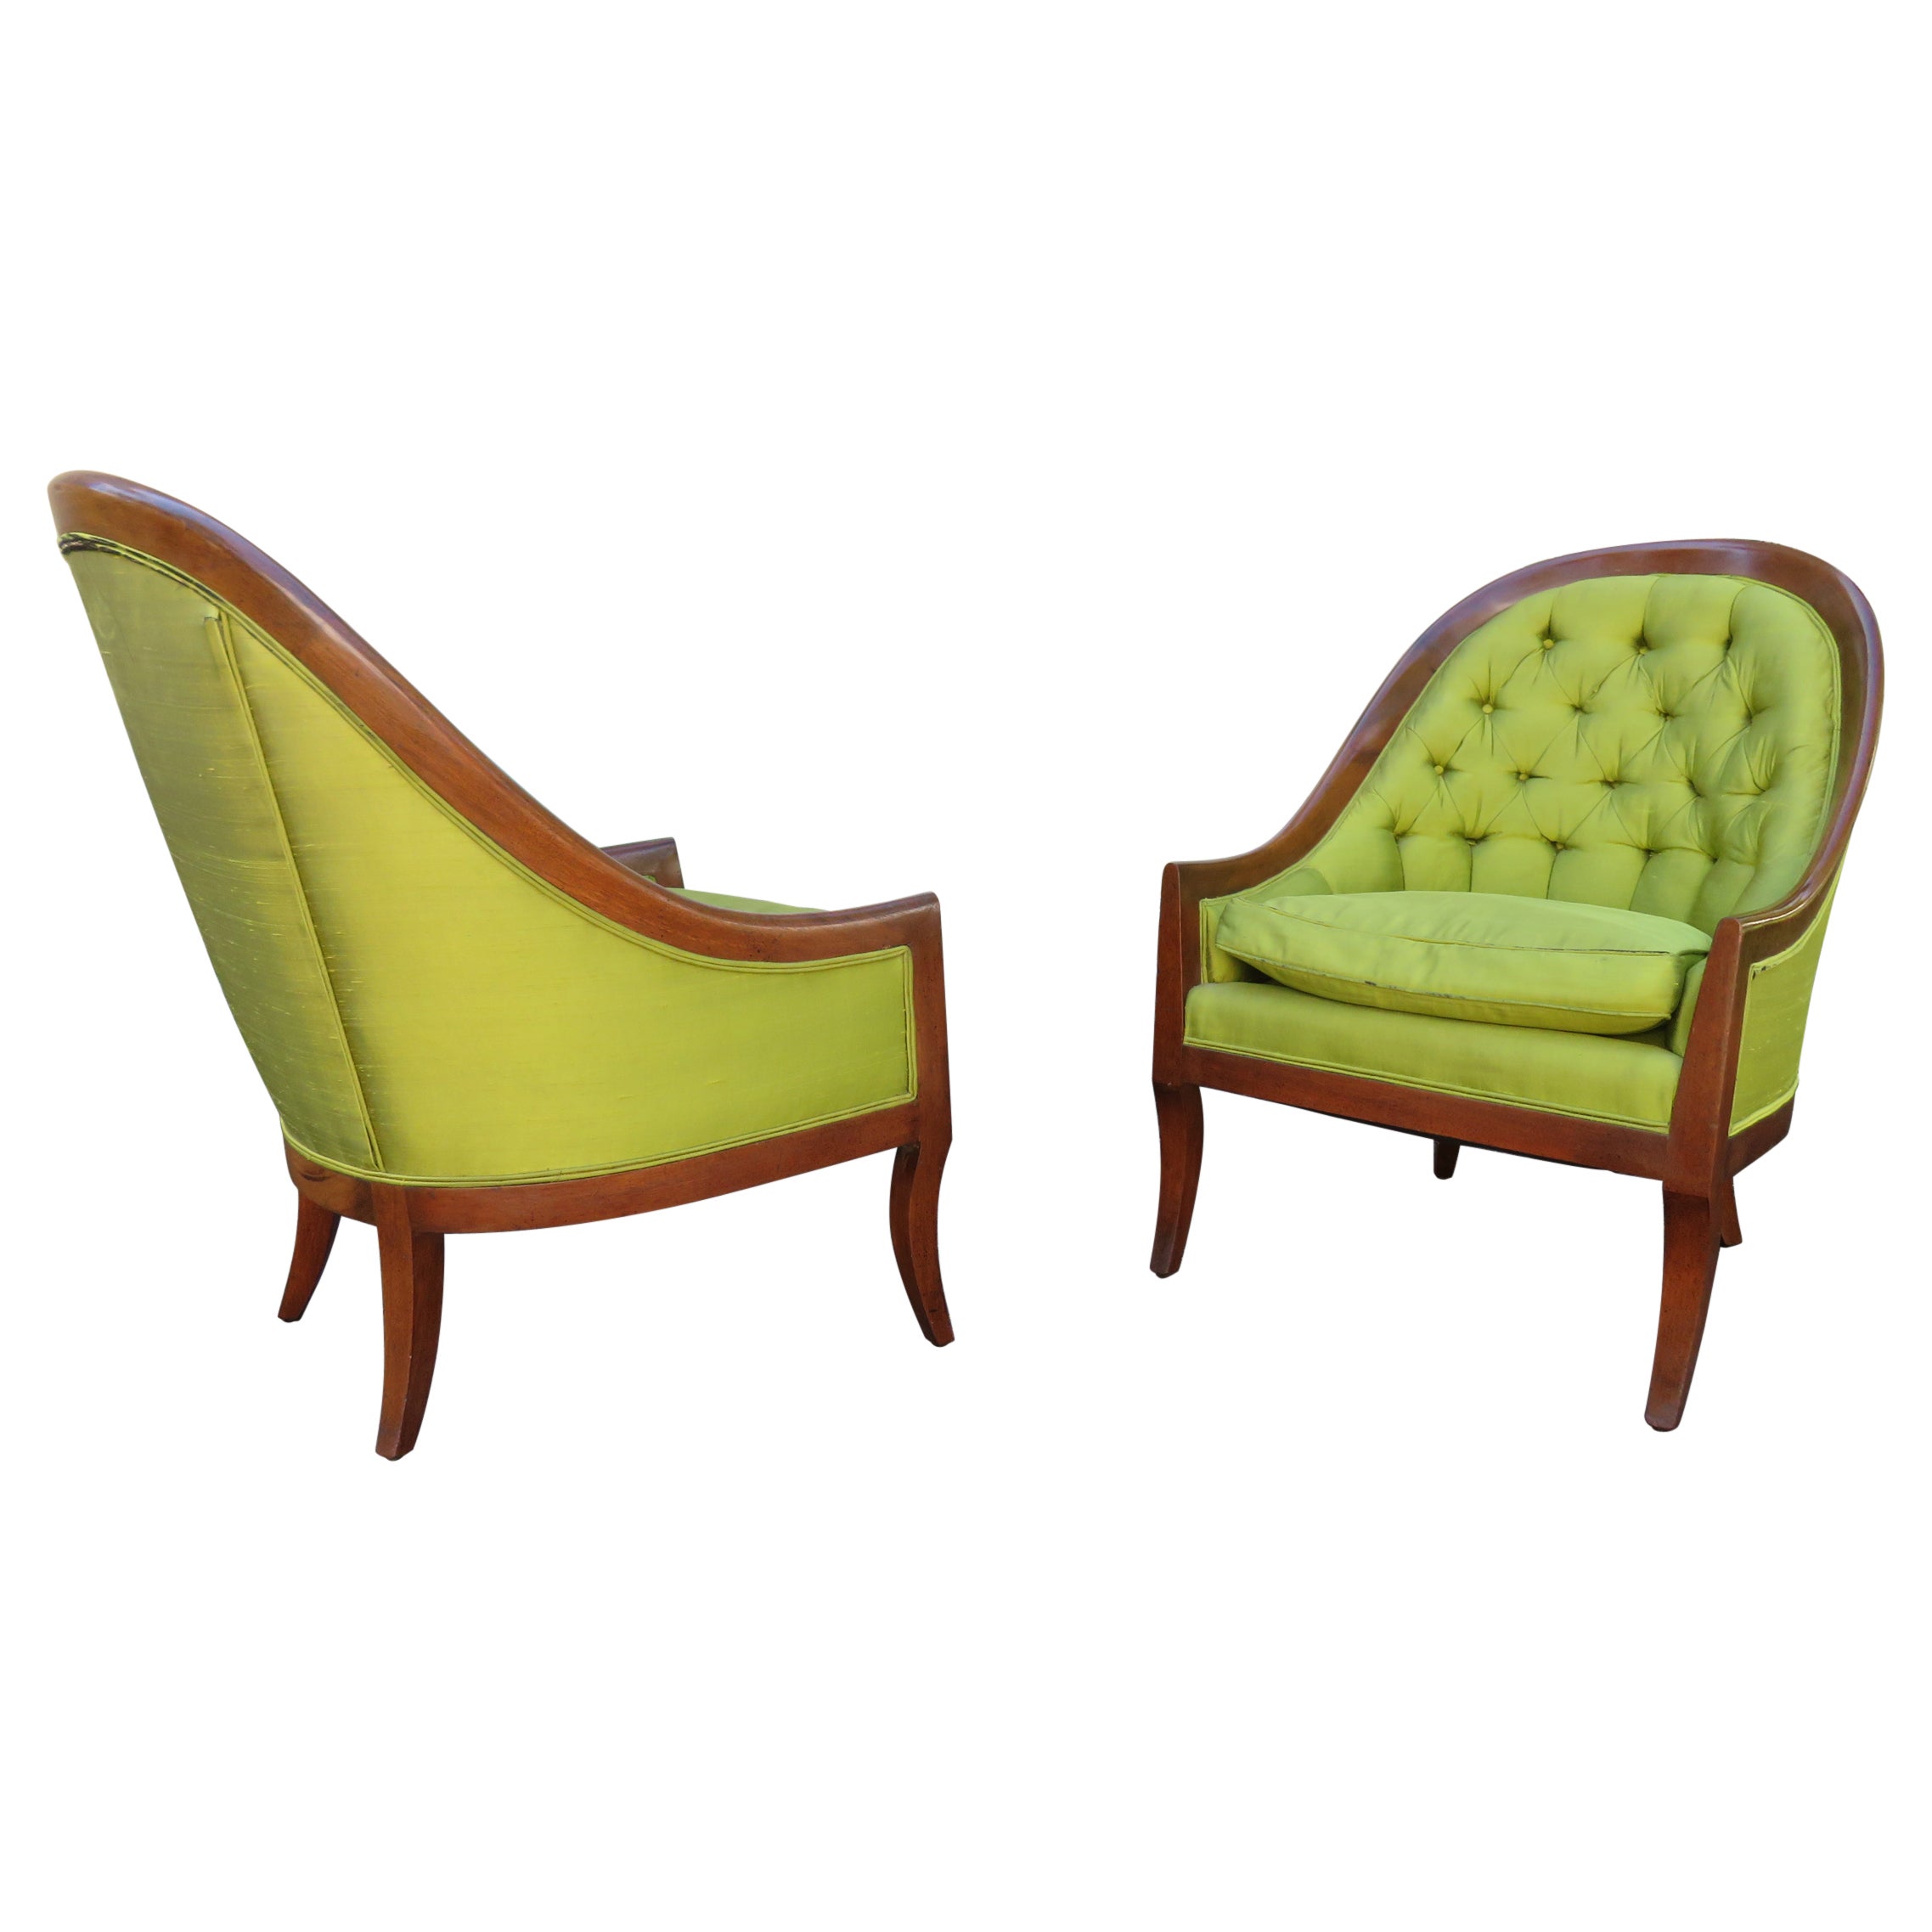 Jolie paire de chaises classiques à dossier cuillère des années 60, mi-siècle moderne